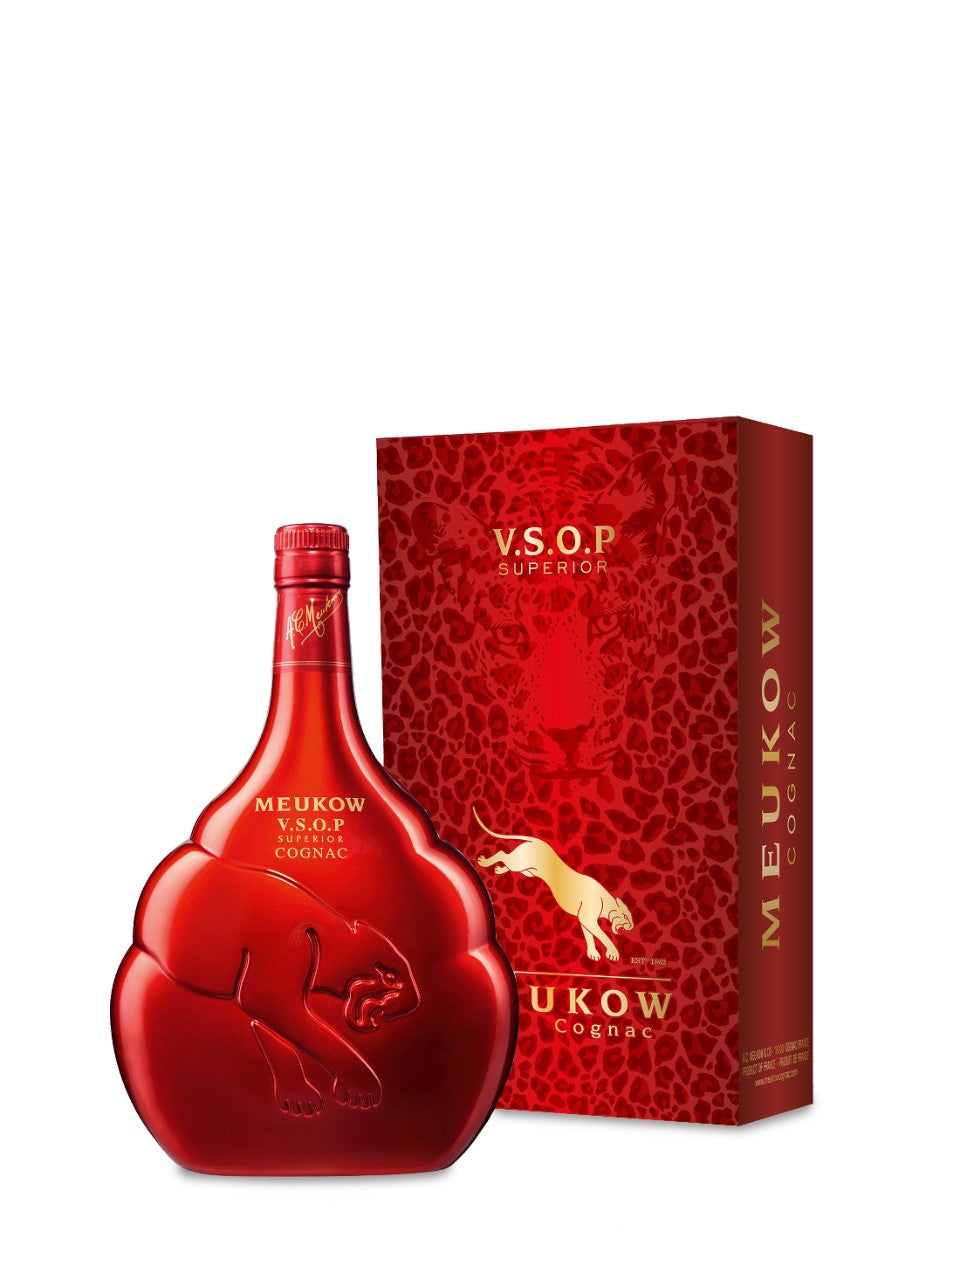 Meukow Feline VSOP Cognac 750 mL bottle